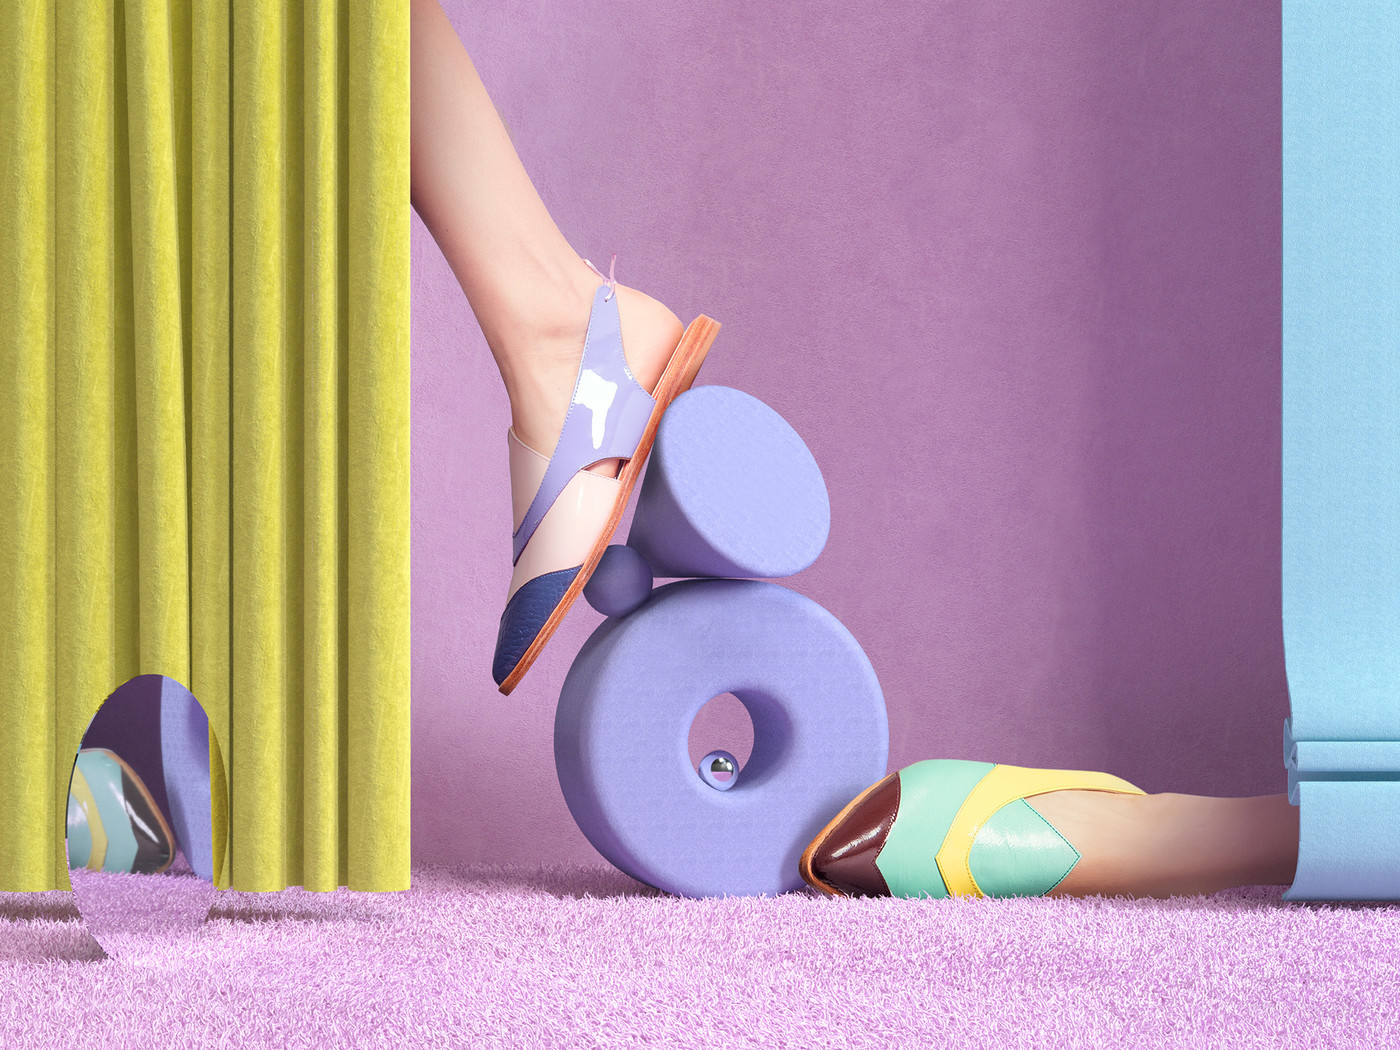 国外女士高跟鞋产品创意广告摄影图片-01